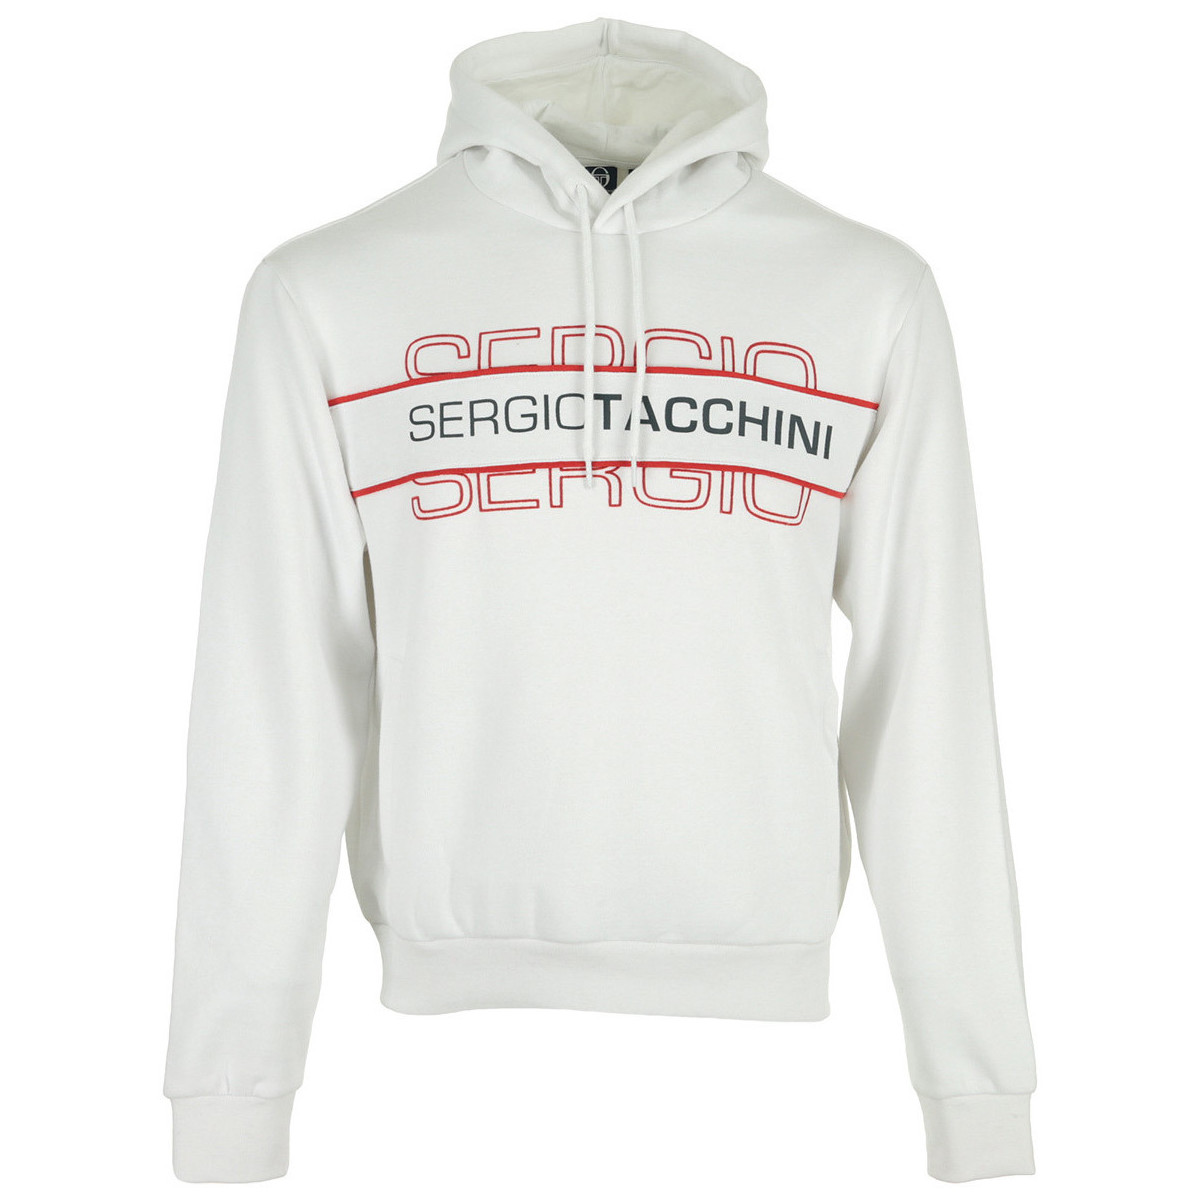 tekstylia Męskie Bluzy Sergio Tacchini Bart Sweater Biały